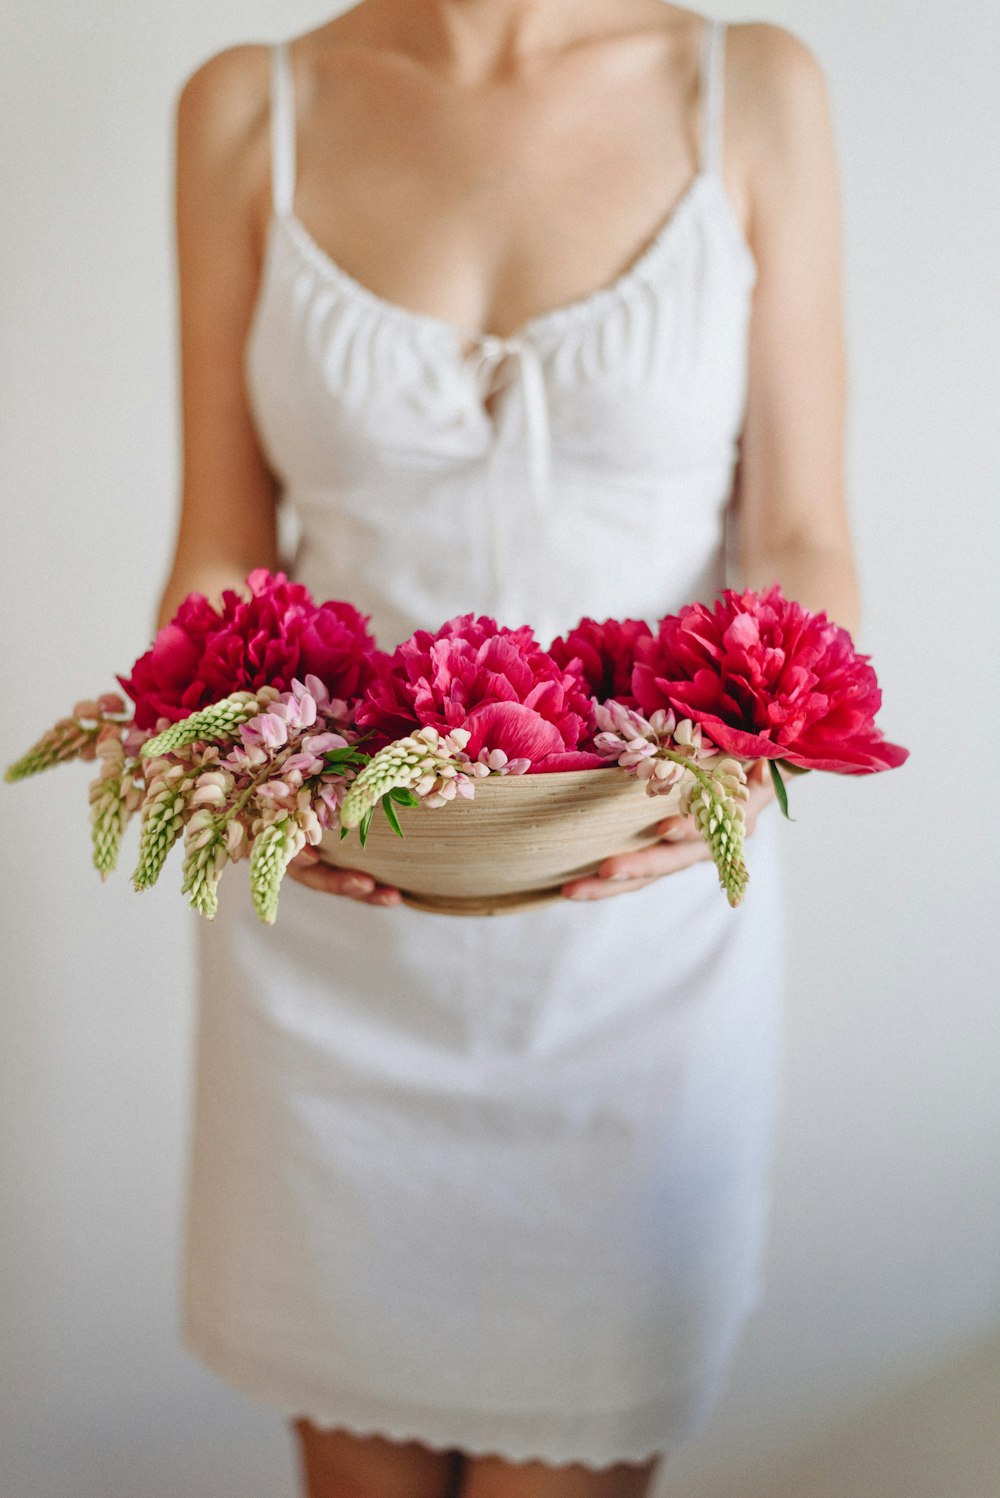 donna in vestito bianco che trasporta fiori rossi